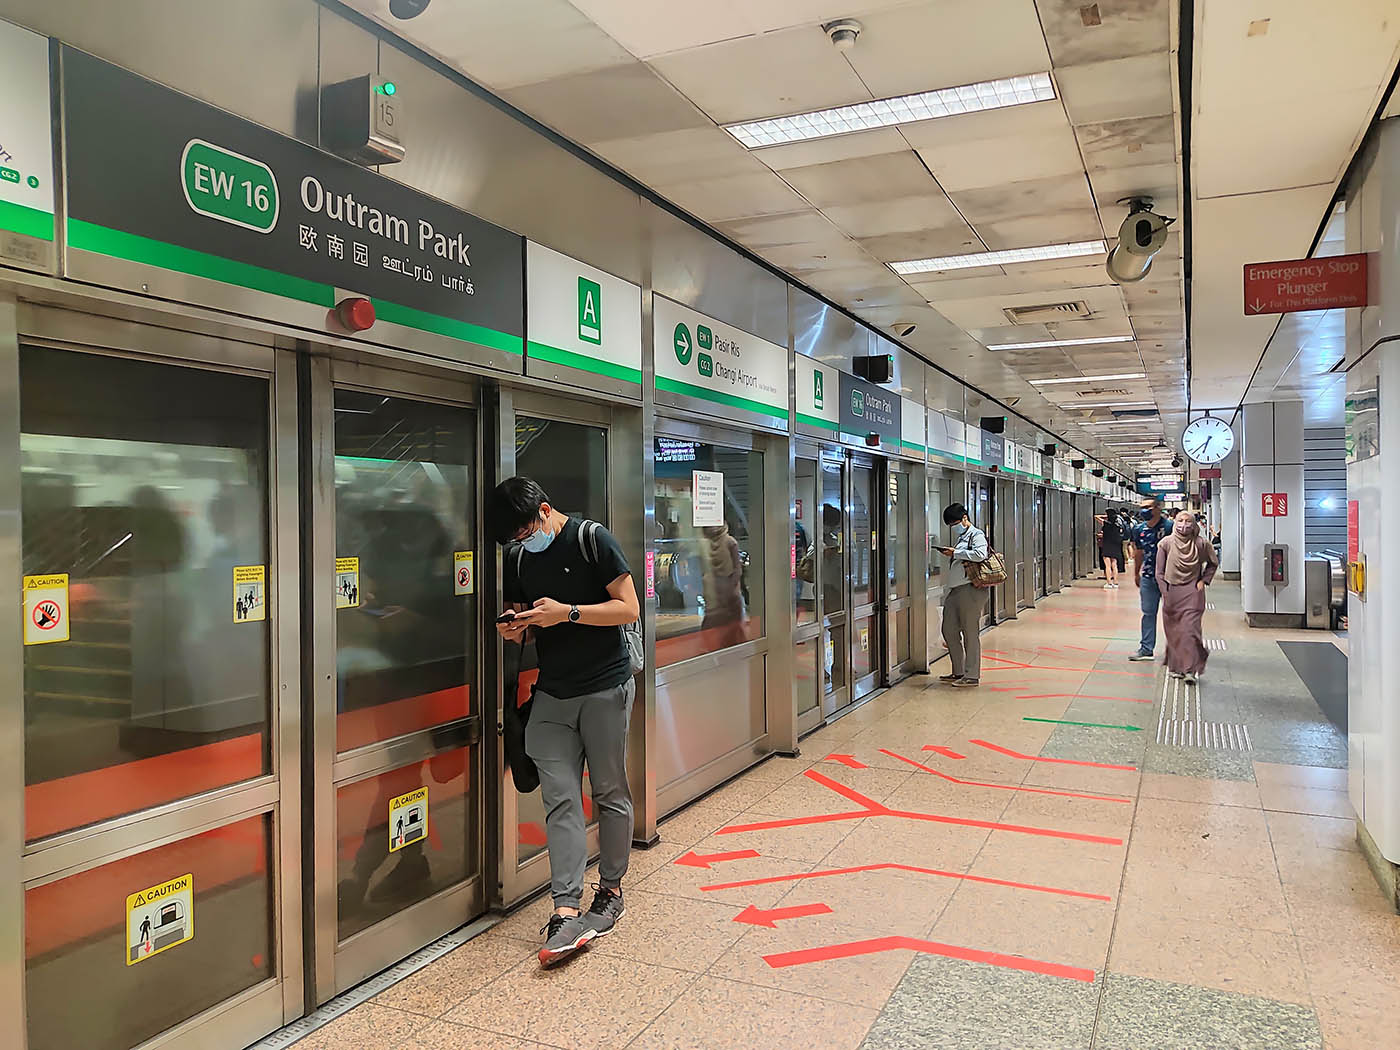 Outram Park MRT Station - - EW16 Platform A